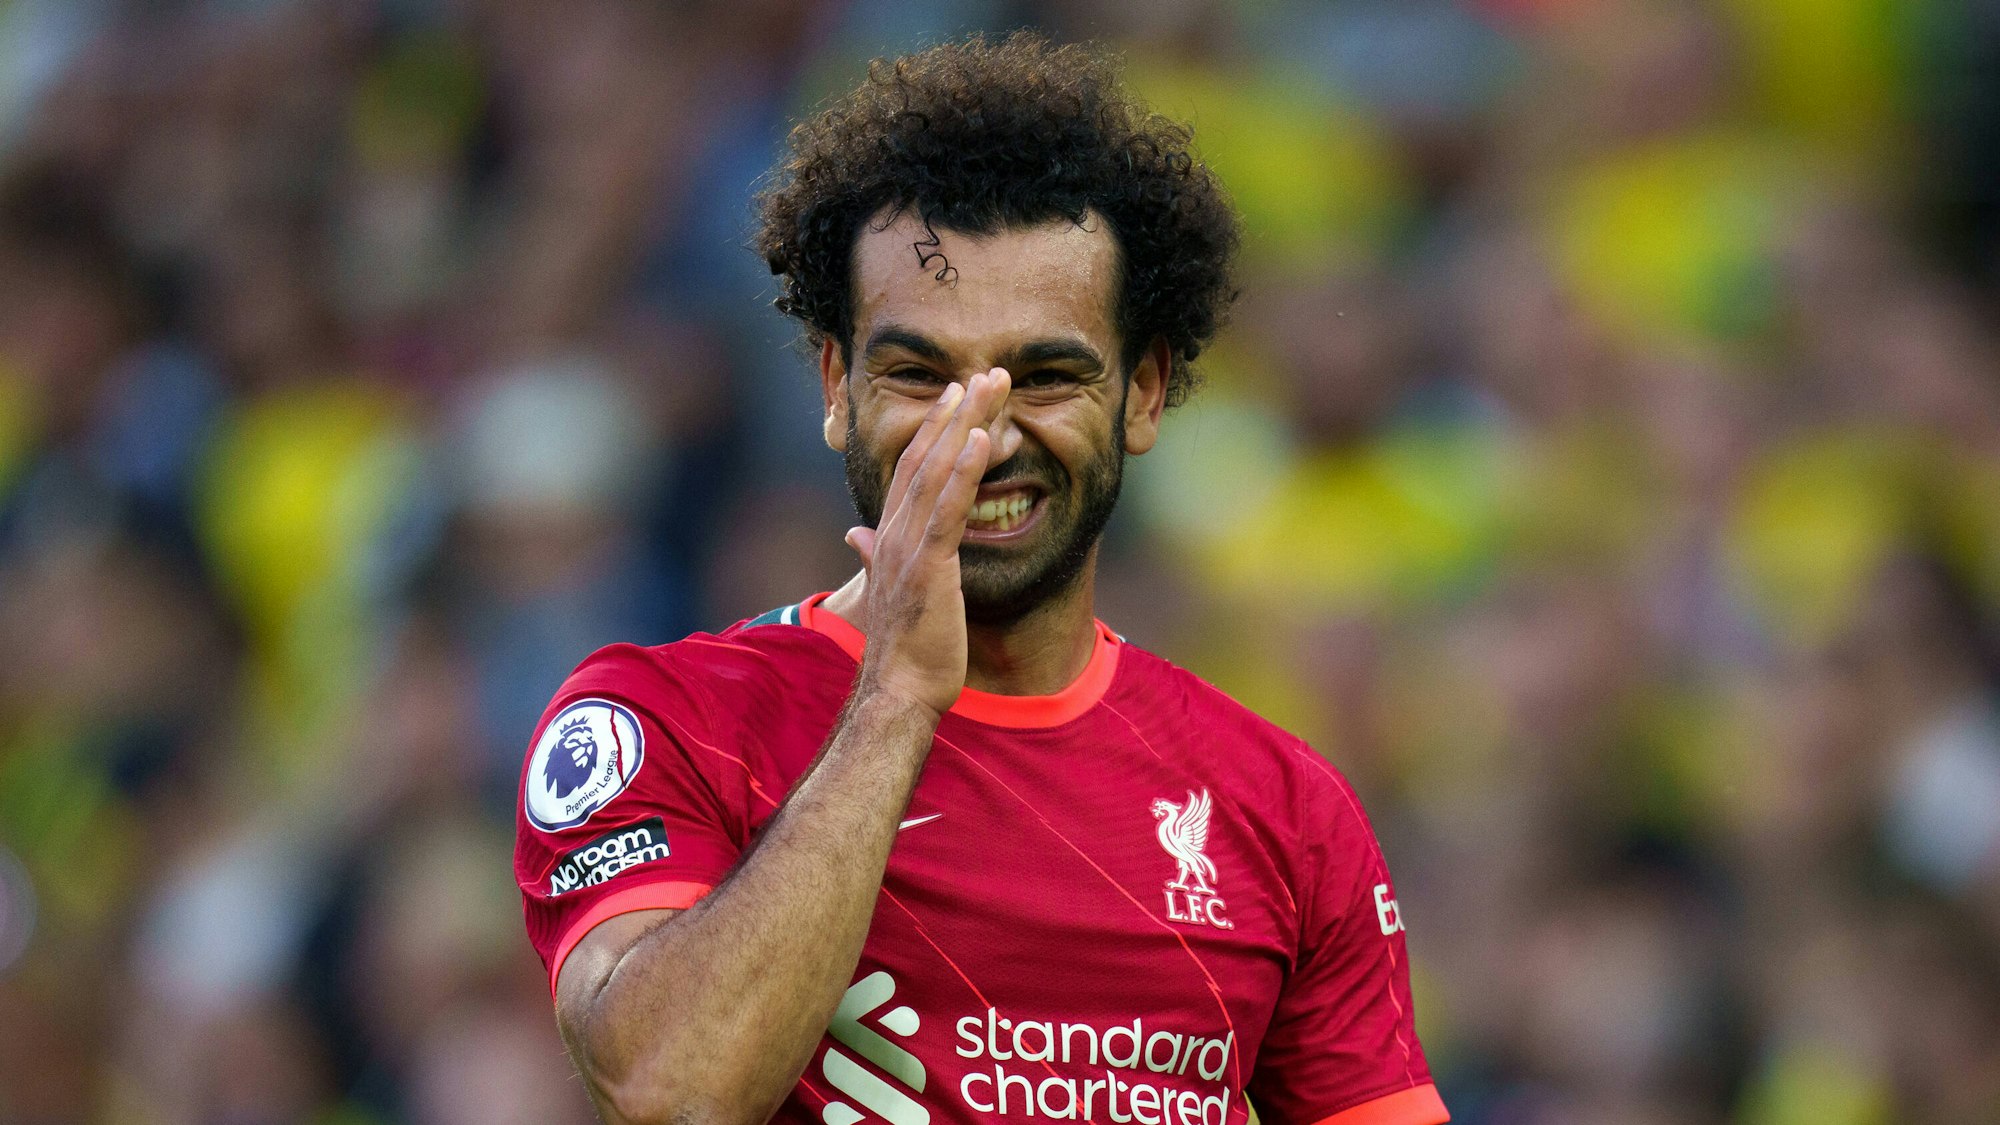 Mo Salah von Liverpool fasst sich mit der Hand in sein Gesicht und zeigt dabei seine Zähne.